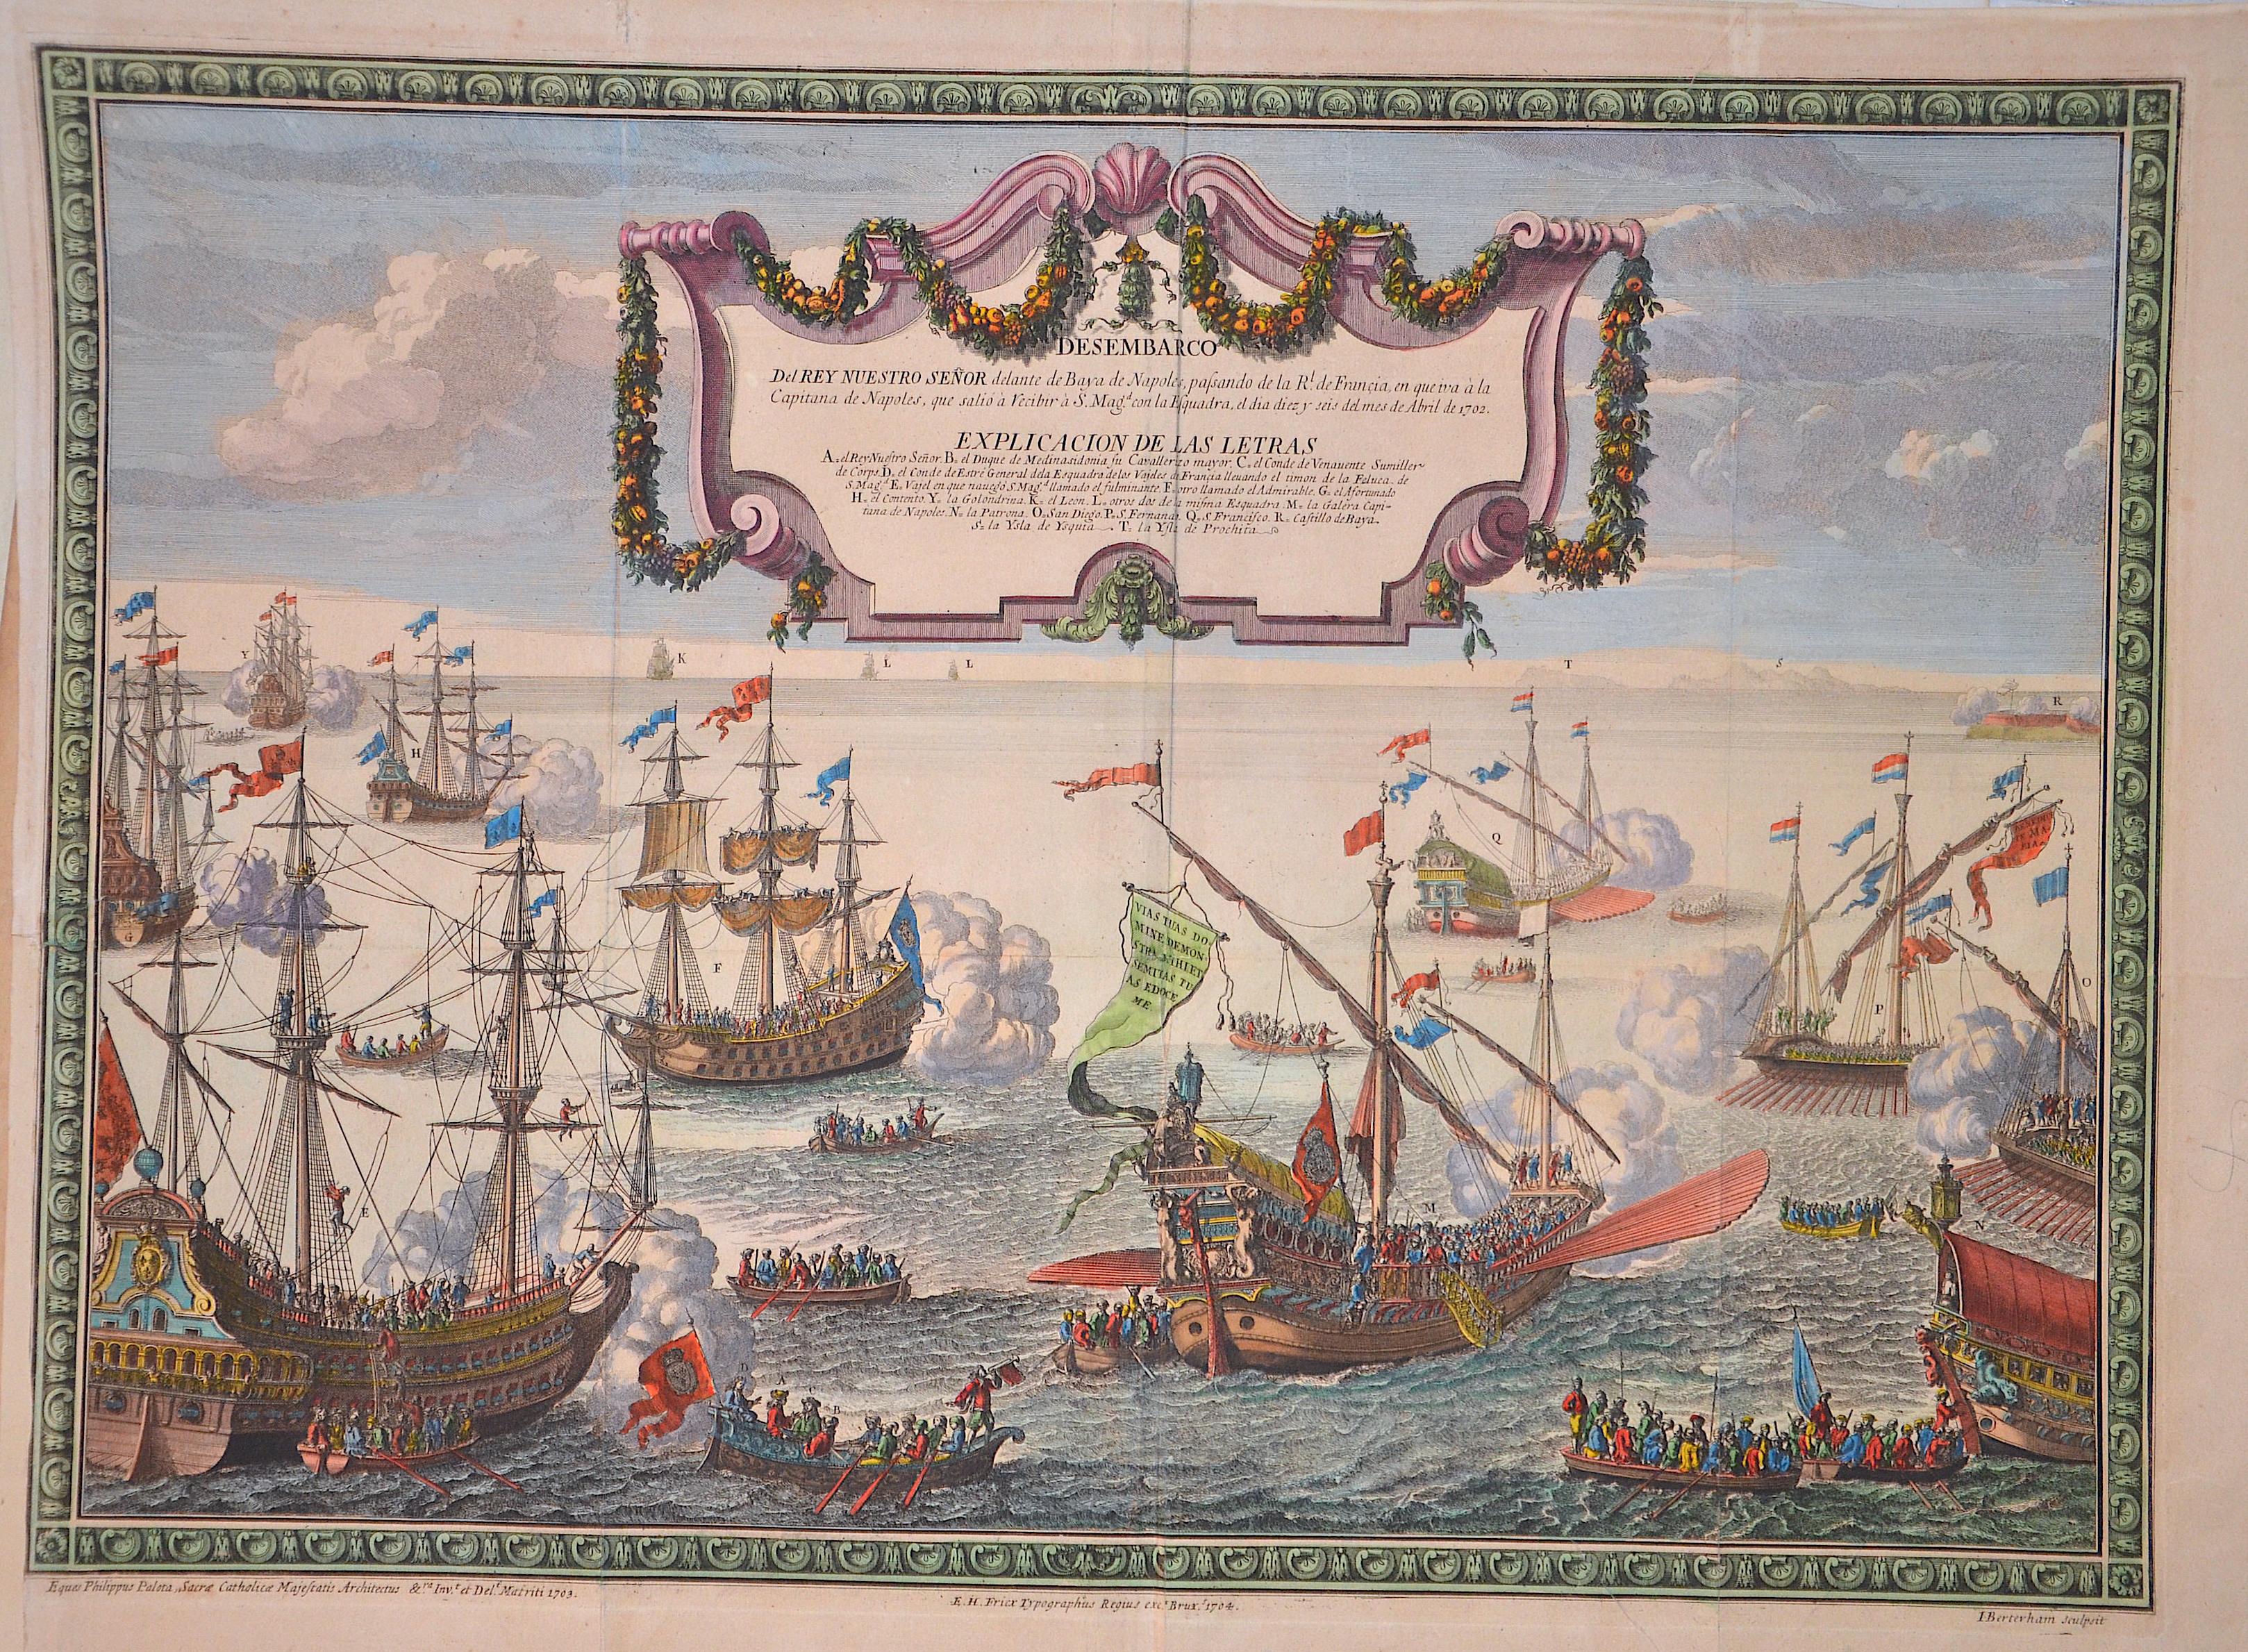 Fricx  Desembarco Del Rey Nuestro Senor dalante de Baya de Napoles , passando de la R. de Francia, en queiva á la Capitana de Napoles que salio á ….1702